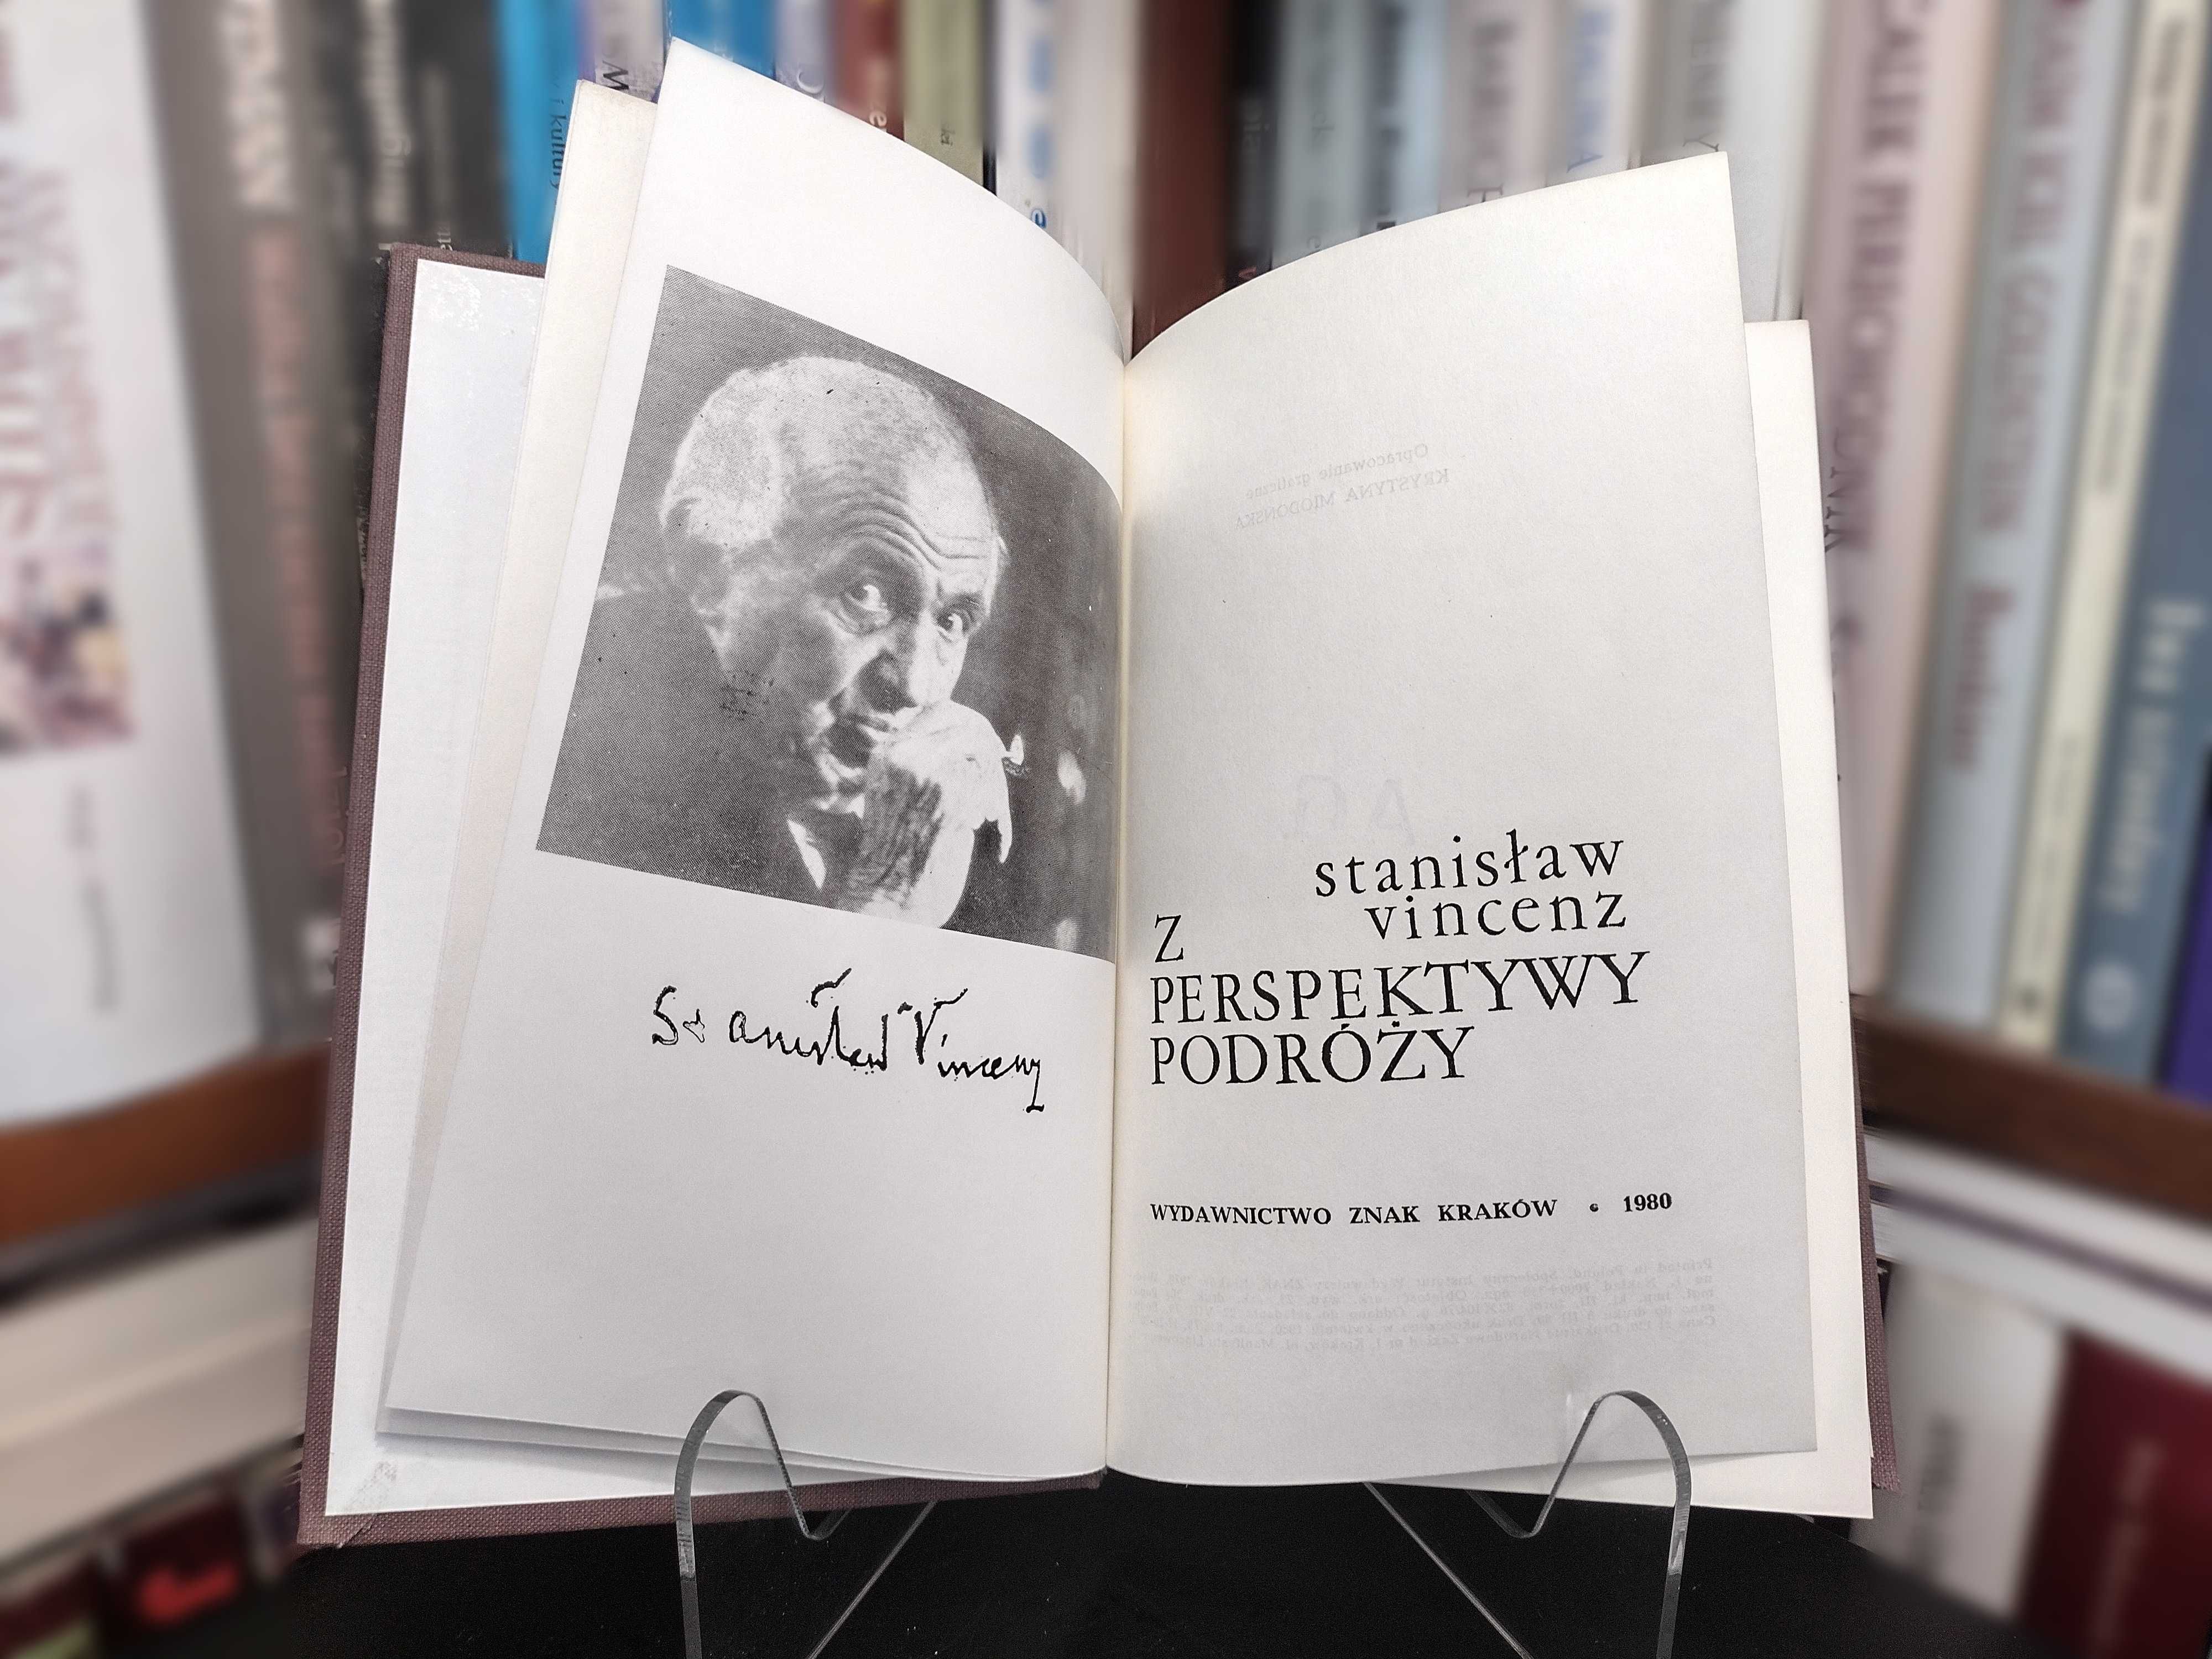 Z perspektywy podróży. Stanisław Vincenz